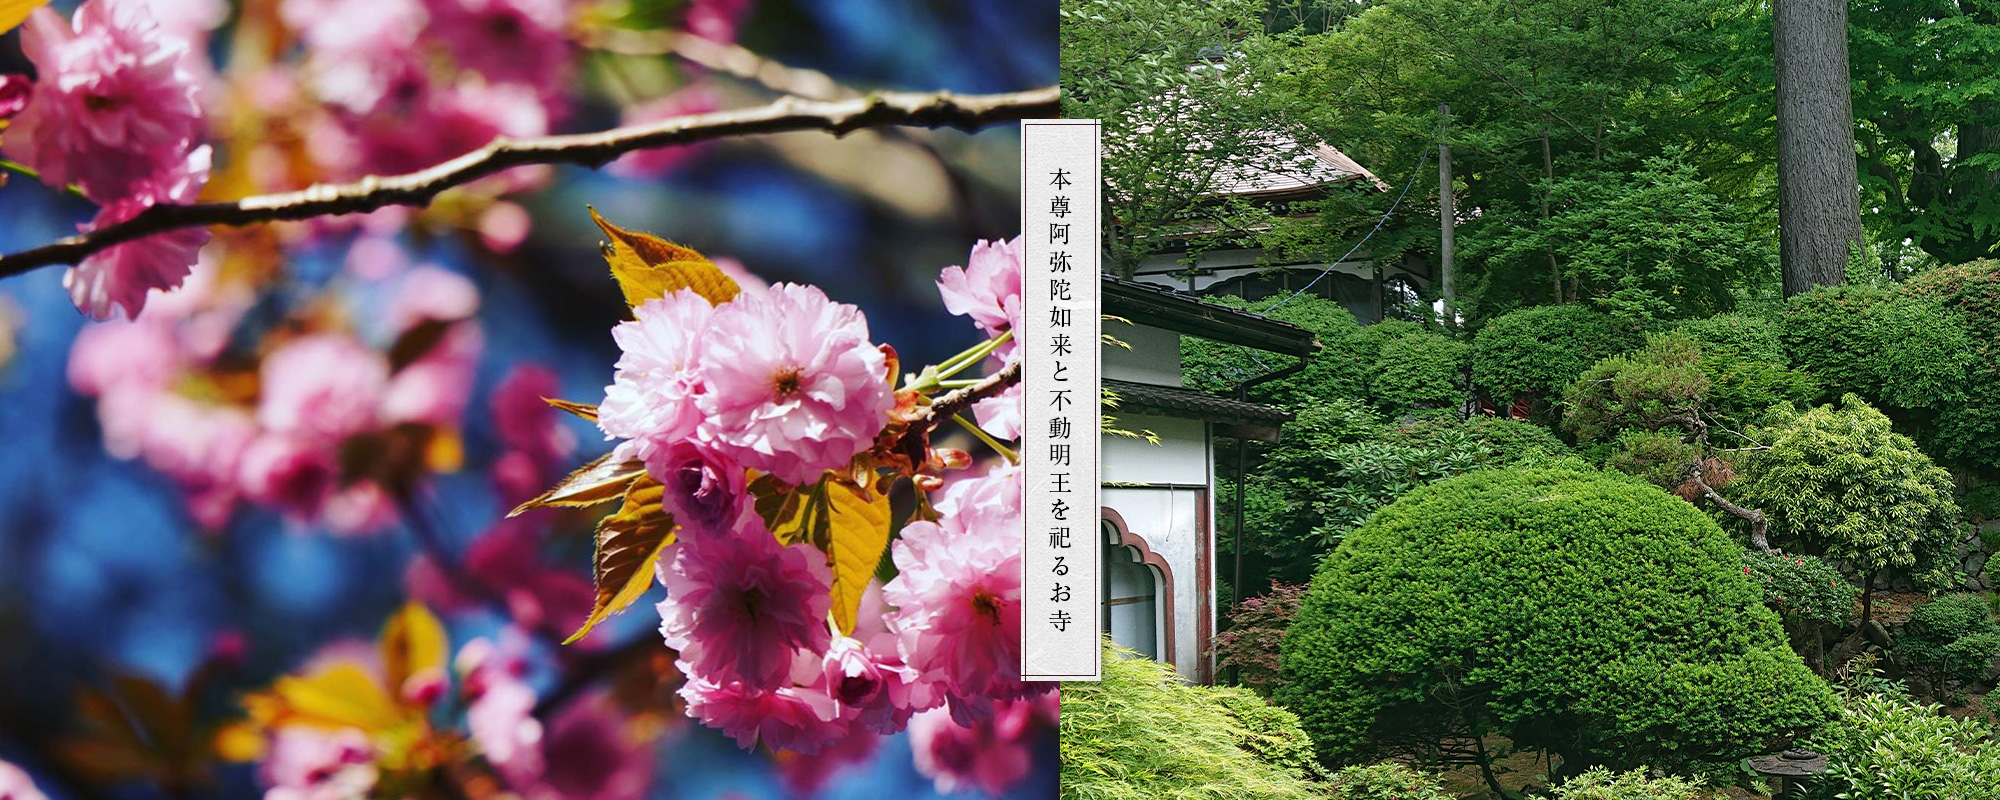 二つの本堂を持つ成田山安養寺